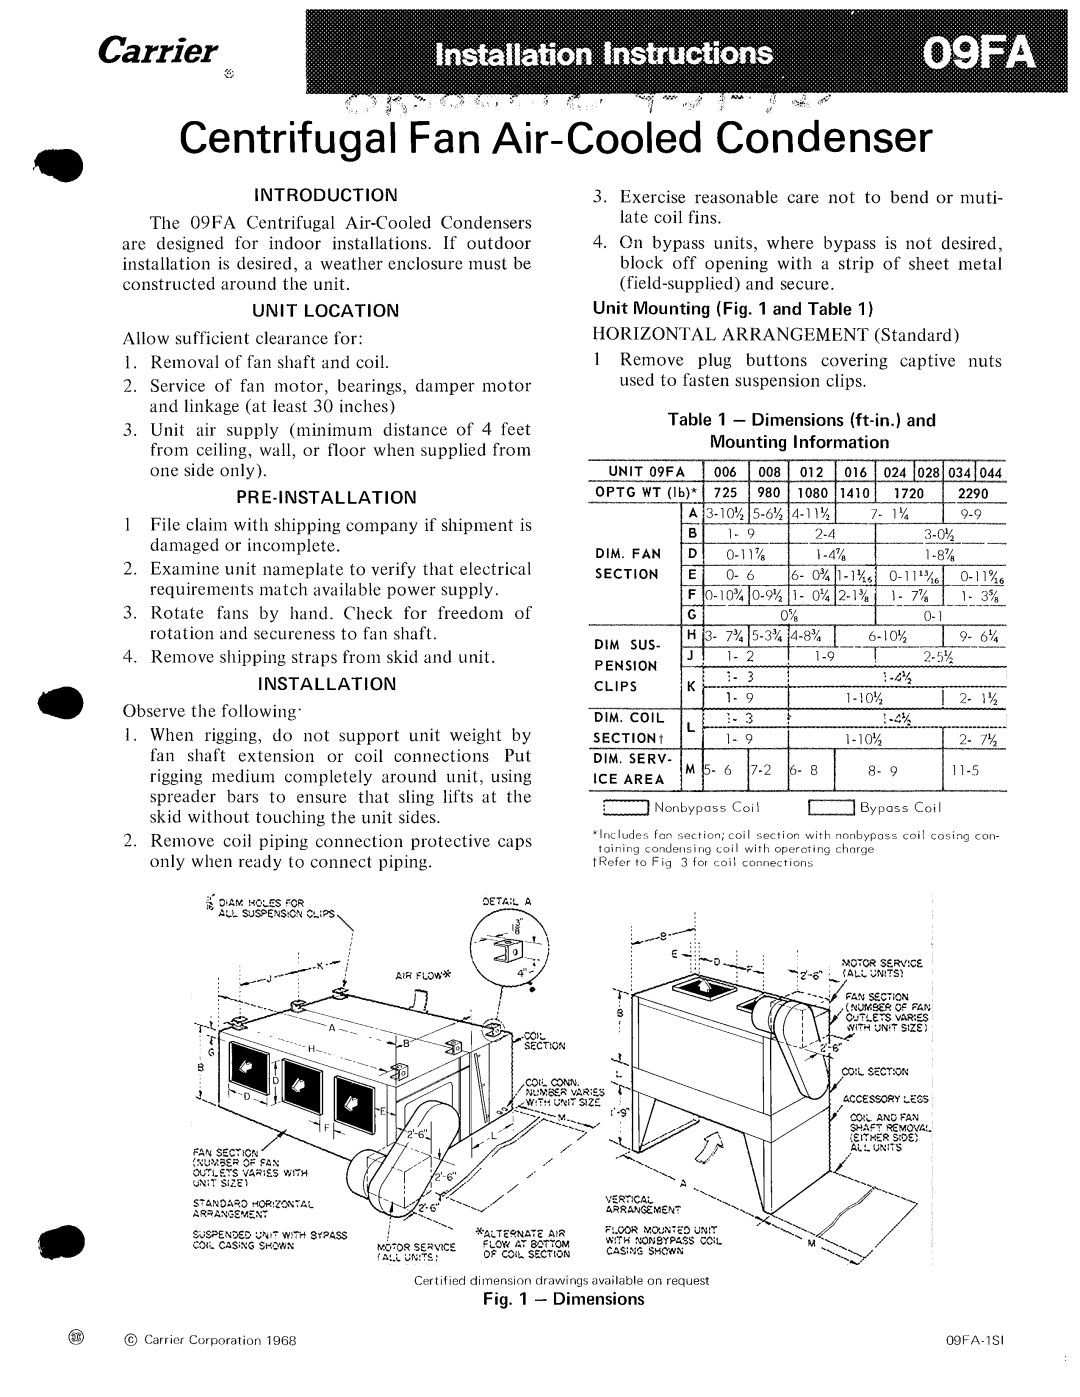 Carrier 09FA manual 